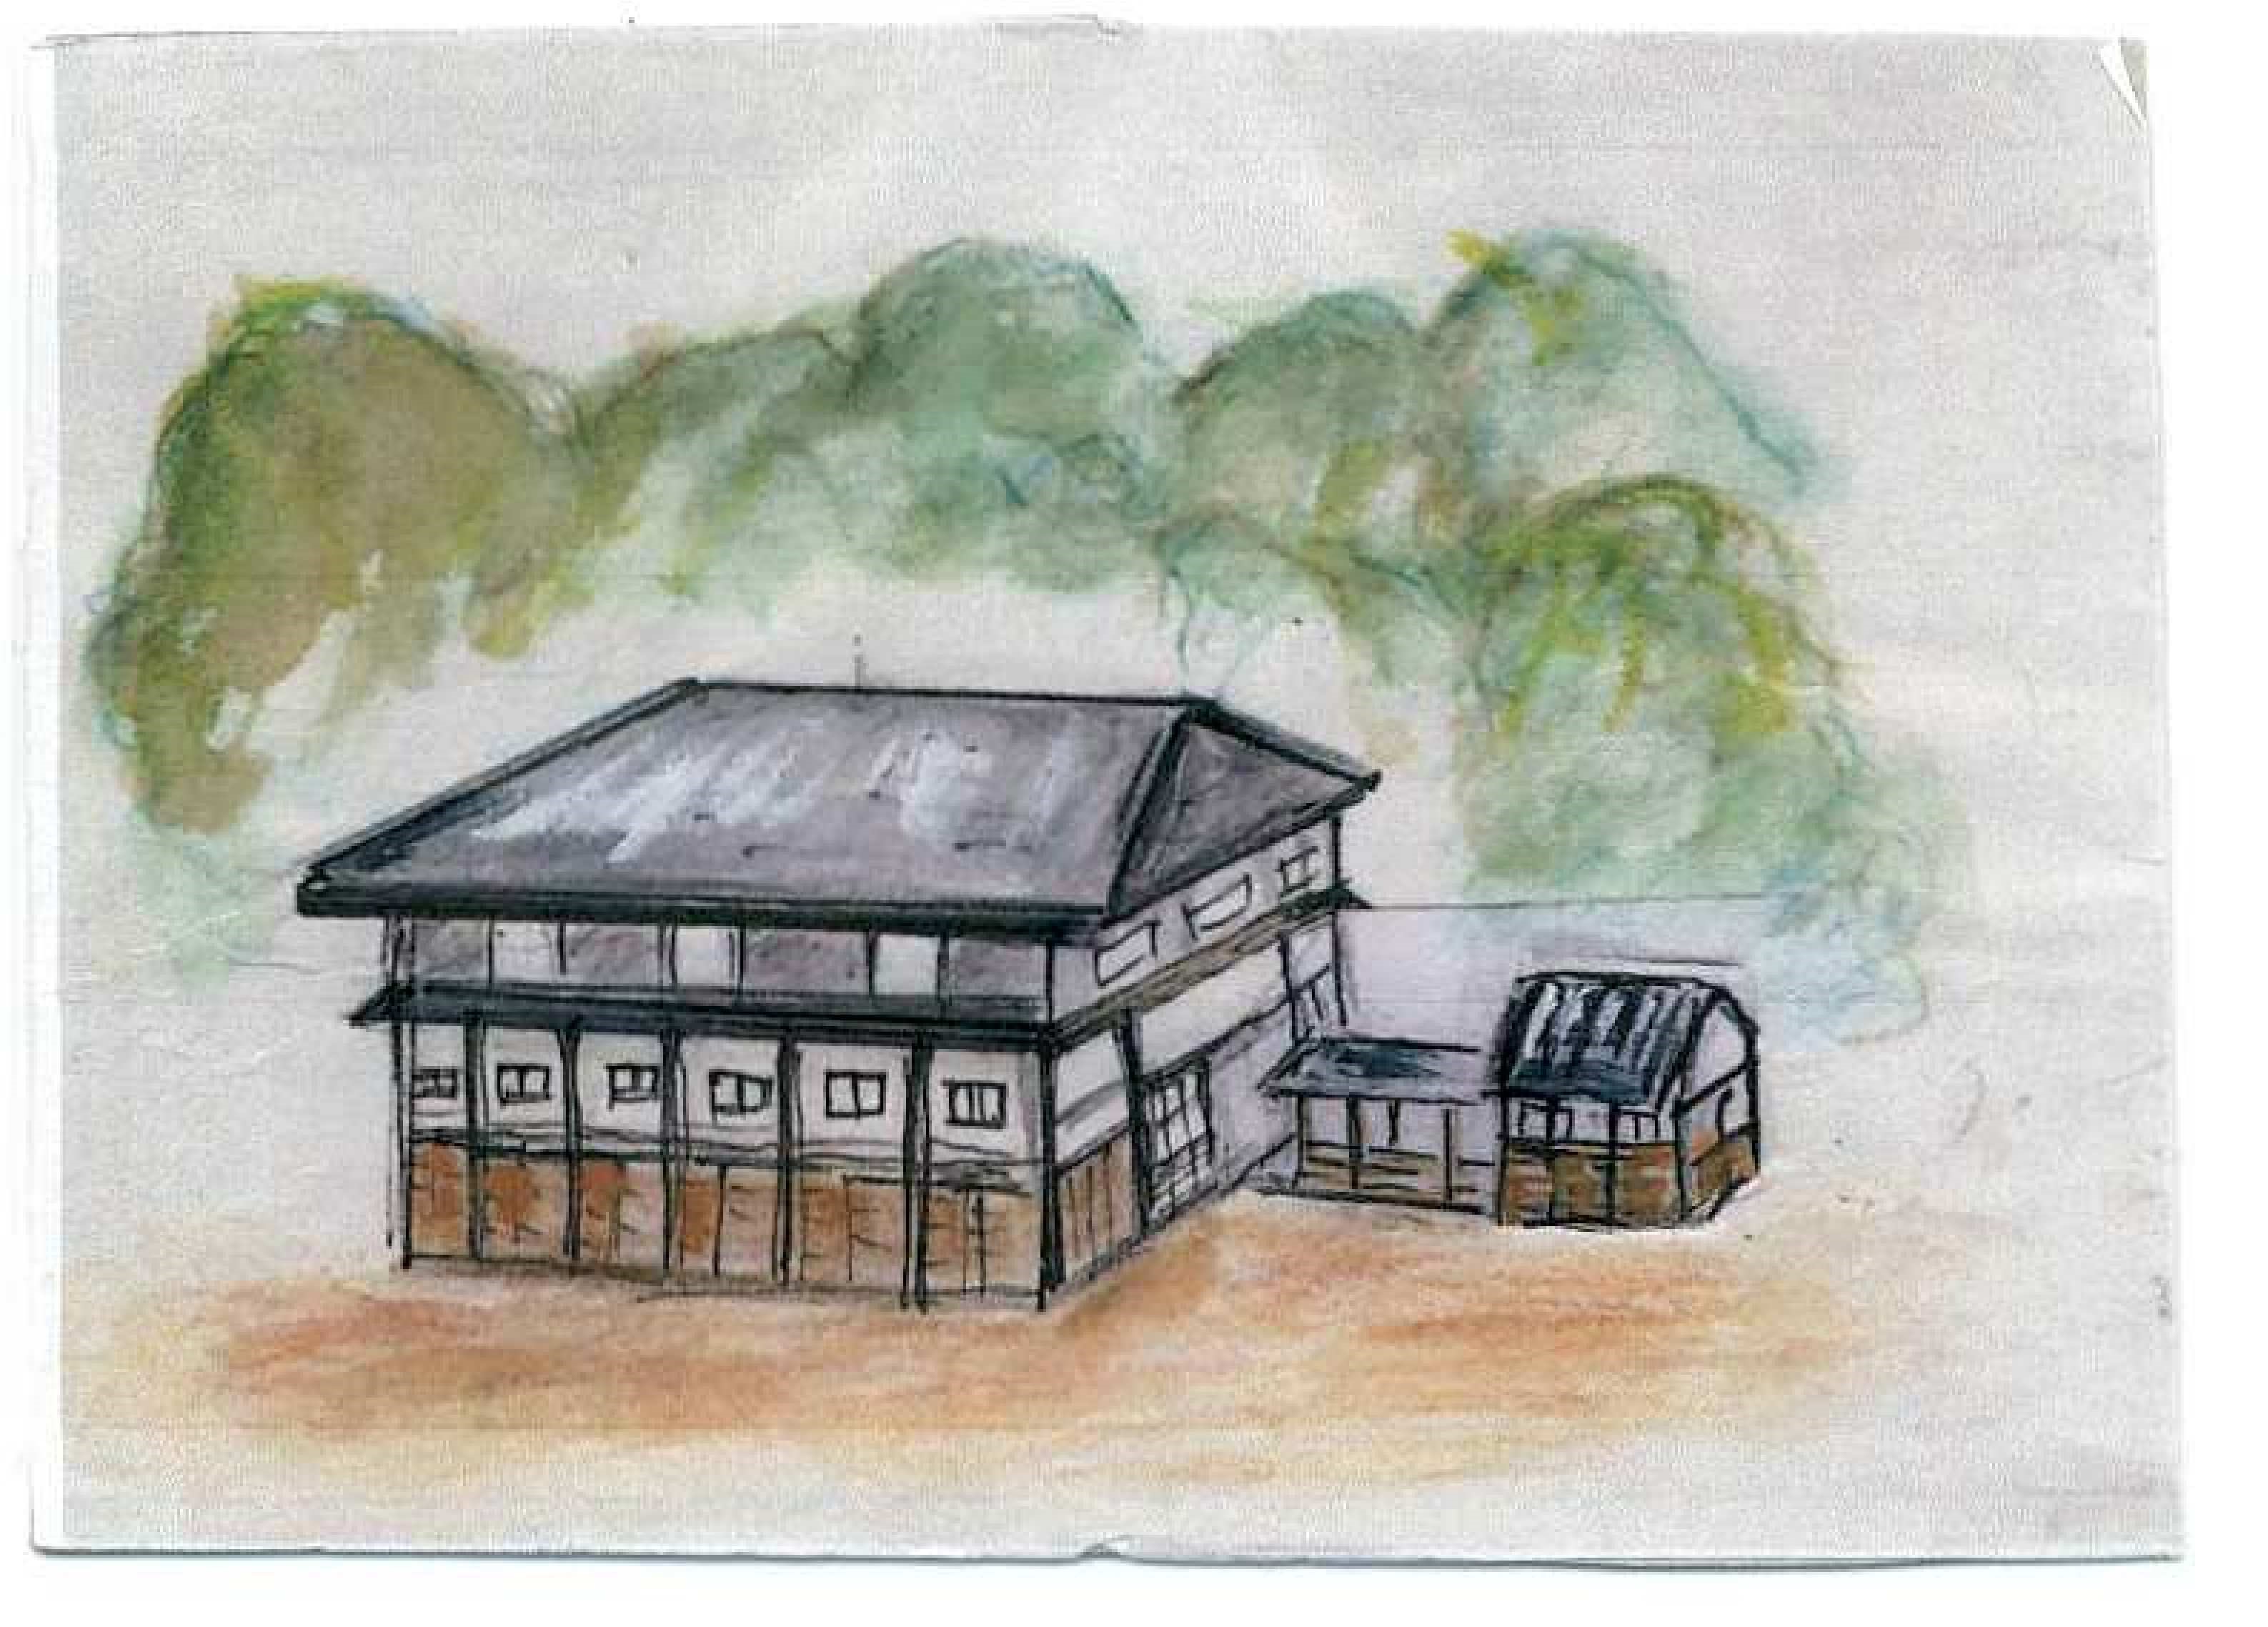 灰色の屋根の校舎と渡り廊下でつながった小さな建物が描かれている。